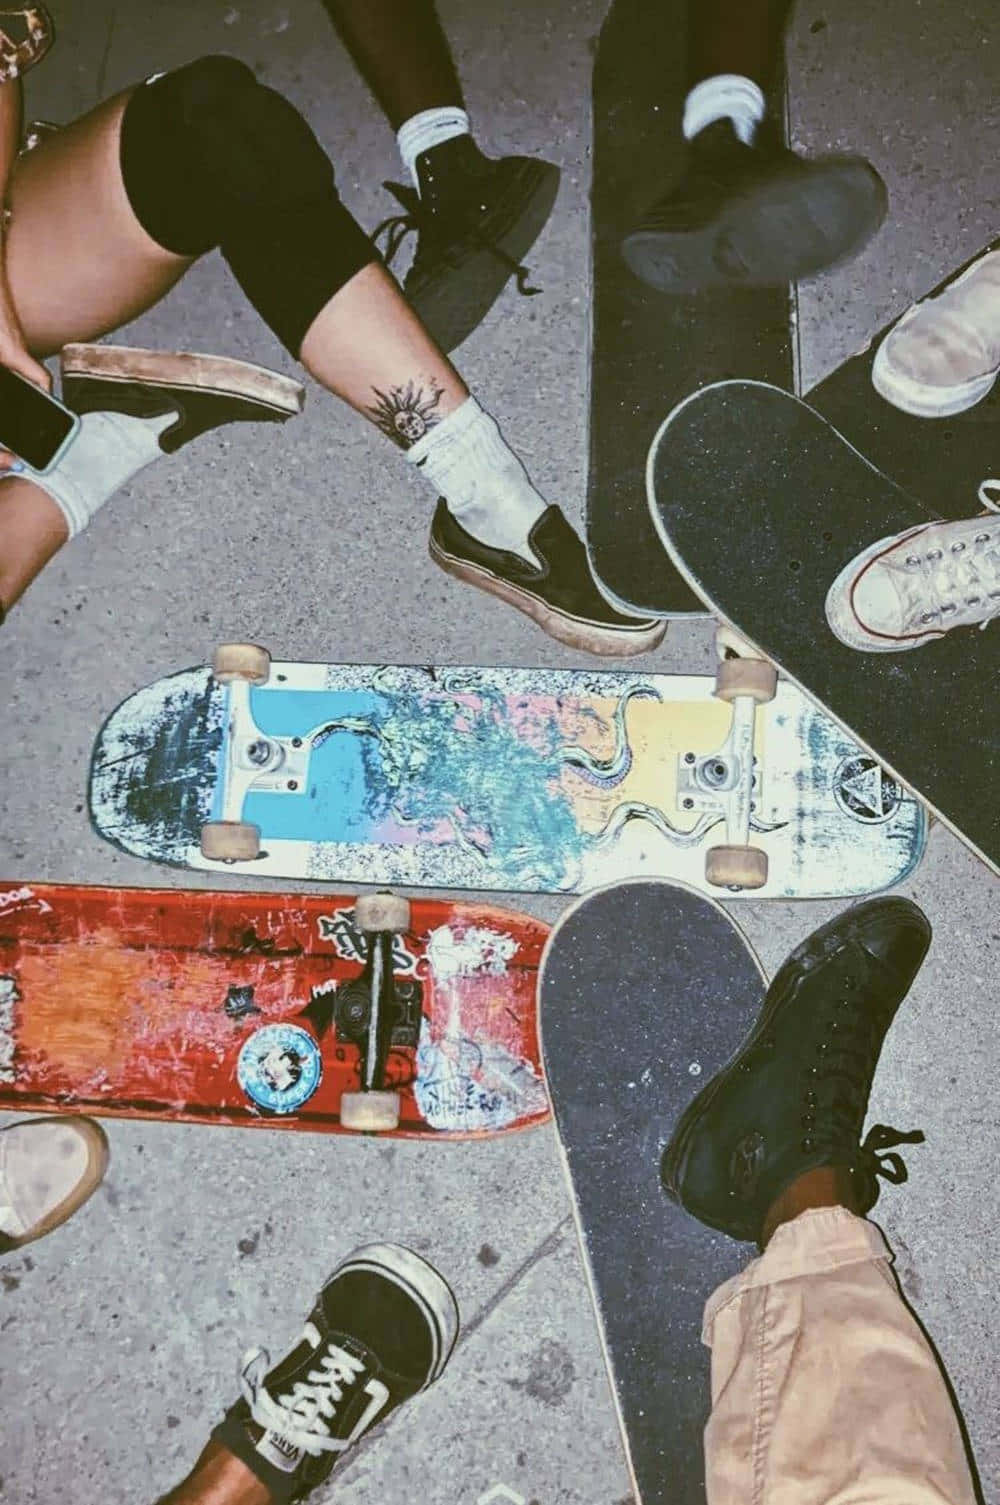 Skateboarders_ Gathering_ Nighttime Wallpaper